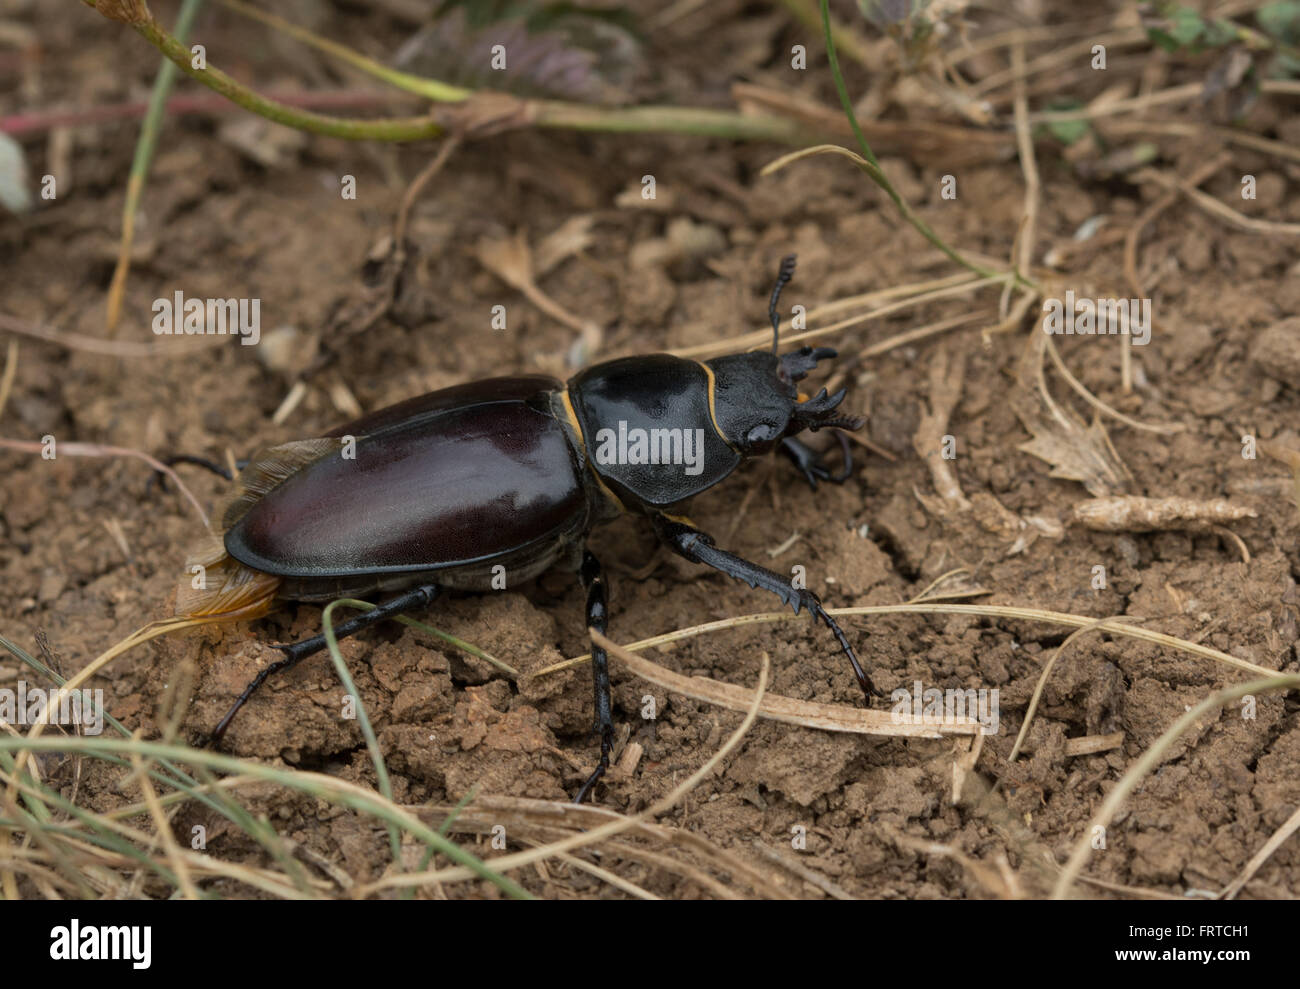 Female stag beetle (Lucanus cervus) Stock Photo